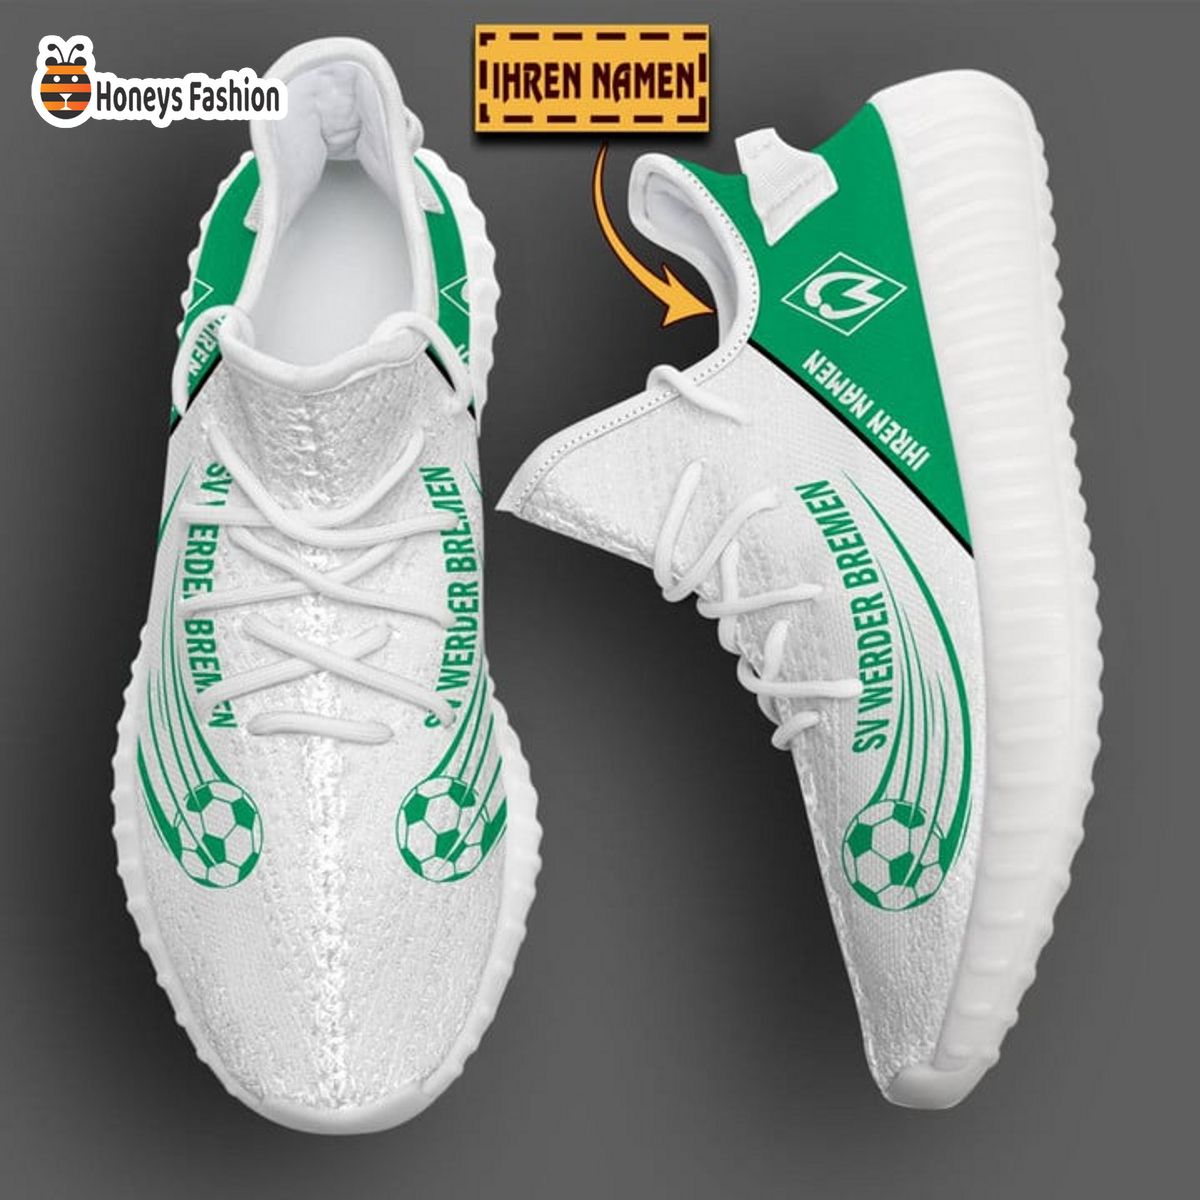 Werder Bremen personalisiert yeezy sneaker